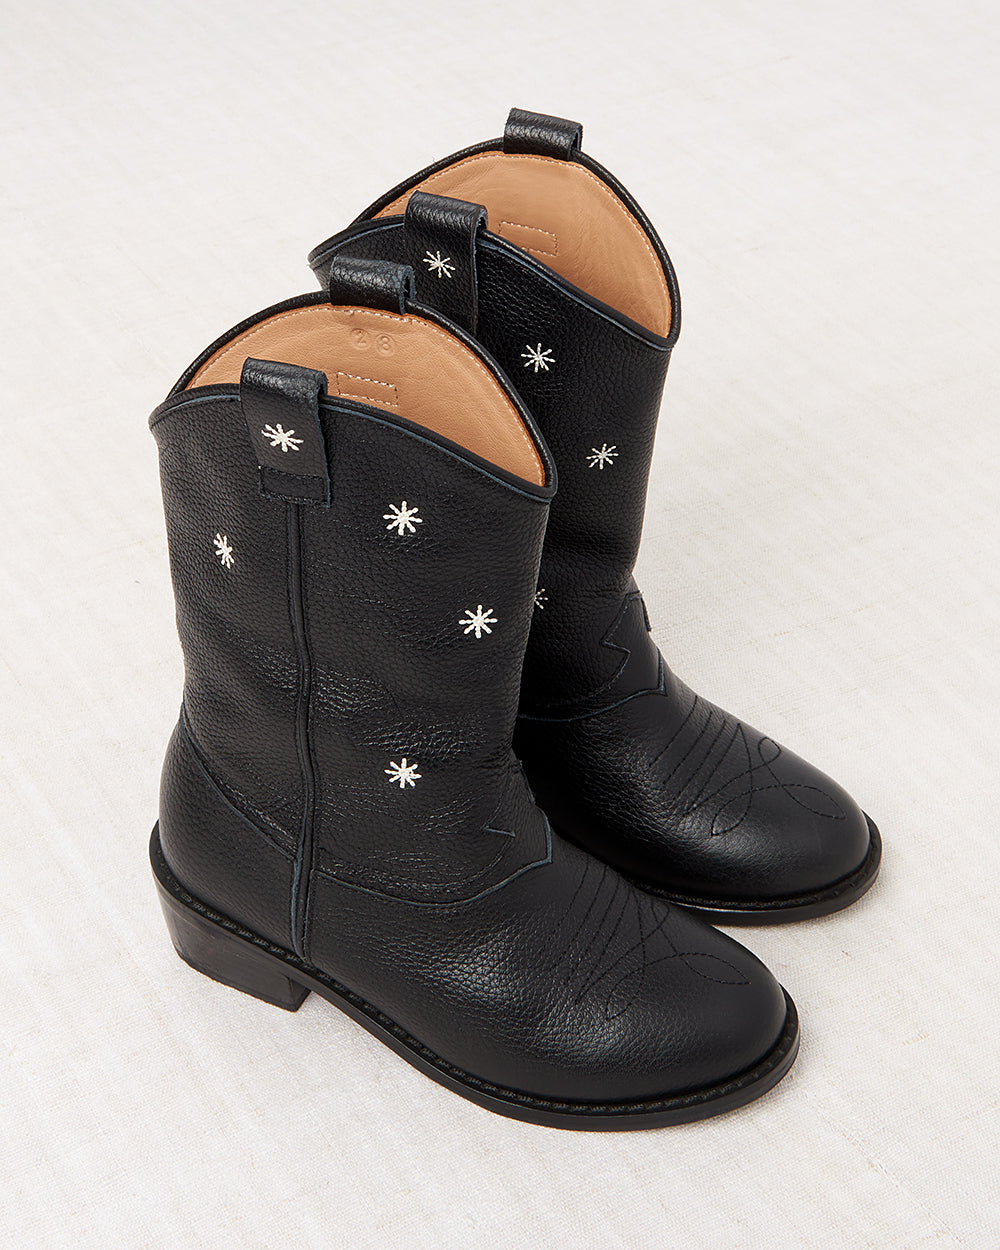 Little Star Cowboy Boot